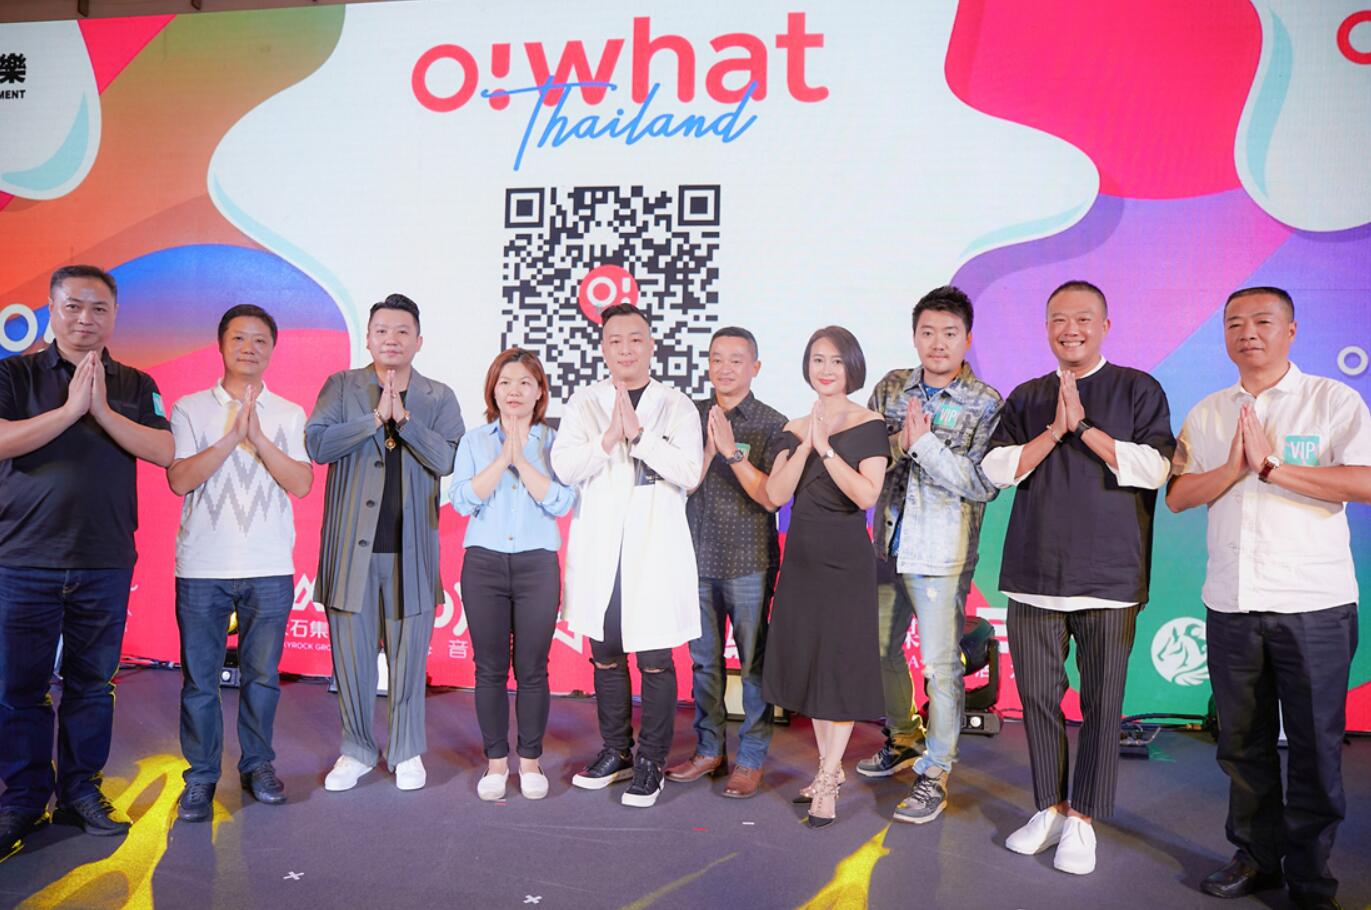 汉森娱乐泰国联手Owhat打造中泰全娱乐新平台汉森旗下众多艺人到场支持